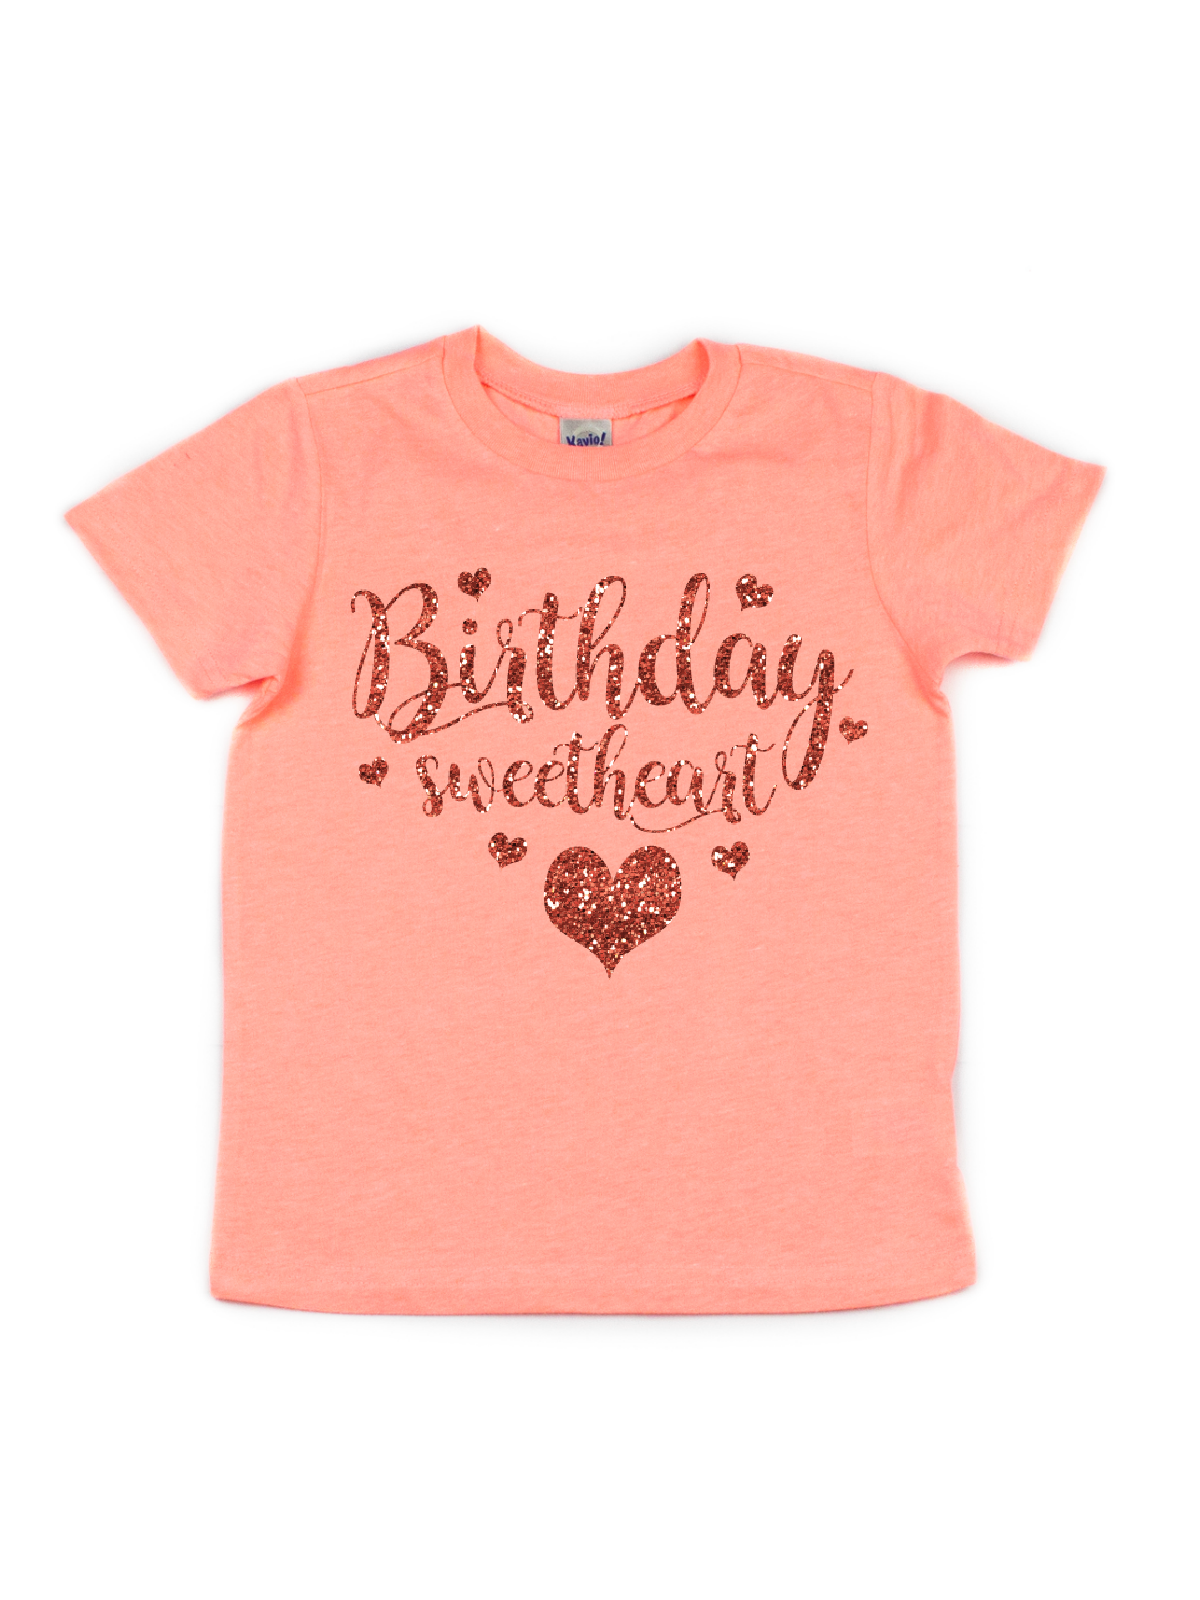 peach and orange girls birthday girl shirt